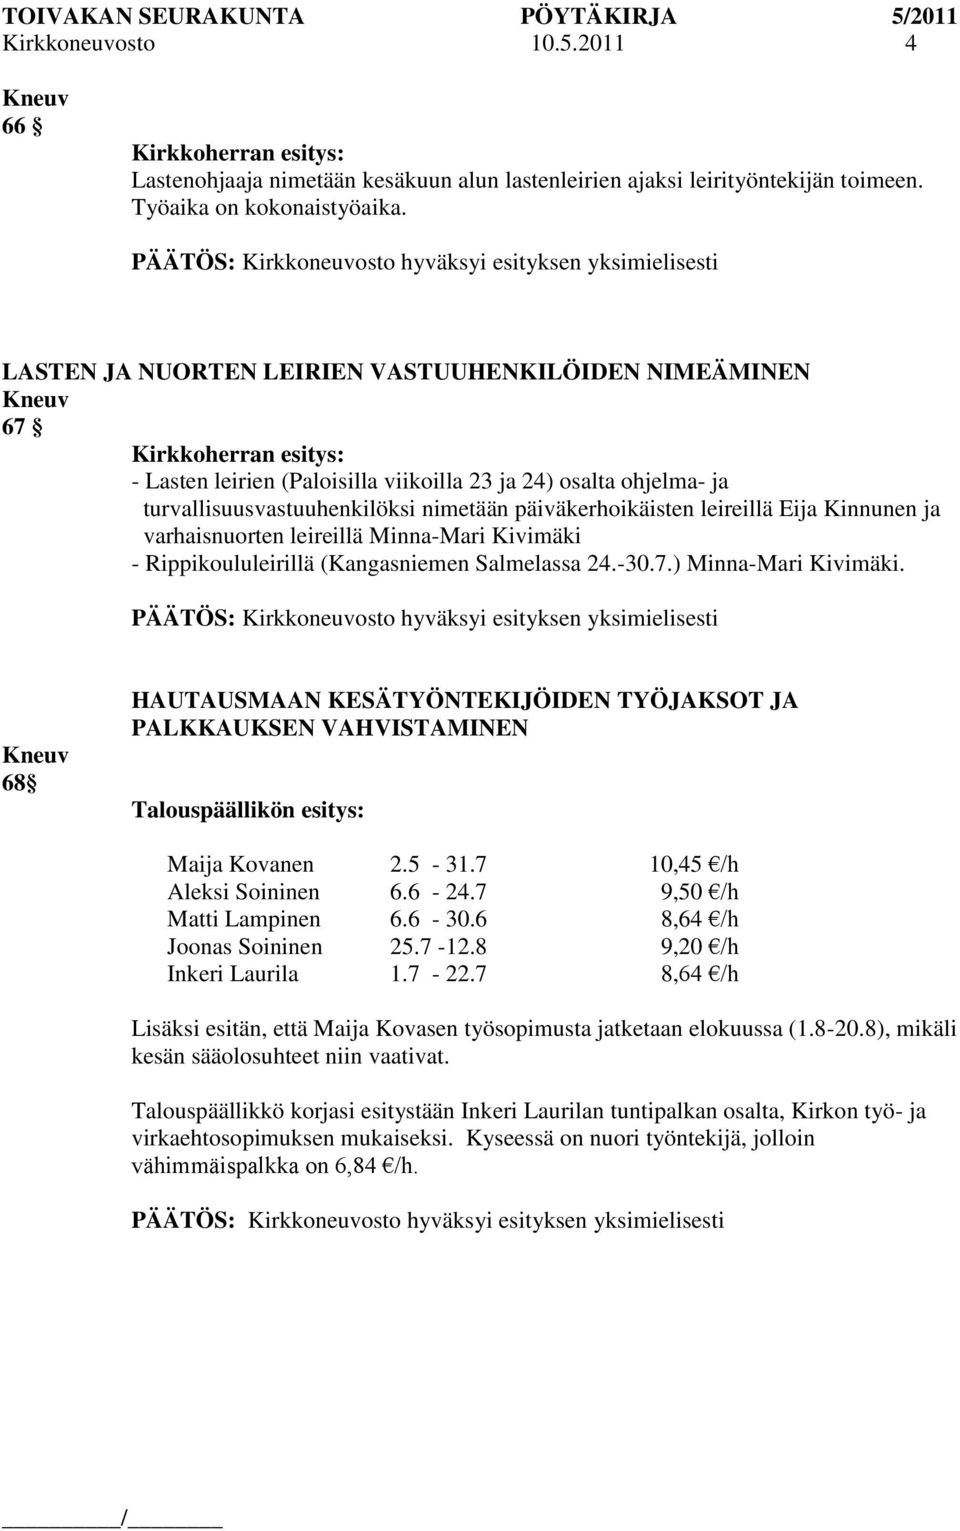 Kinnunen ja varhaisnuorten leireillä Minna-Mari Kivimäki - Rippikoululeirillä (Kangasniemen Salmelassa 24.-30.7.) Minna-Mari Kivimäki.